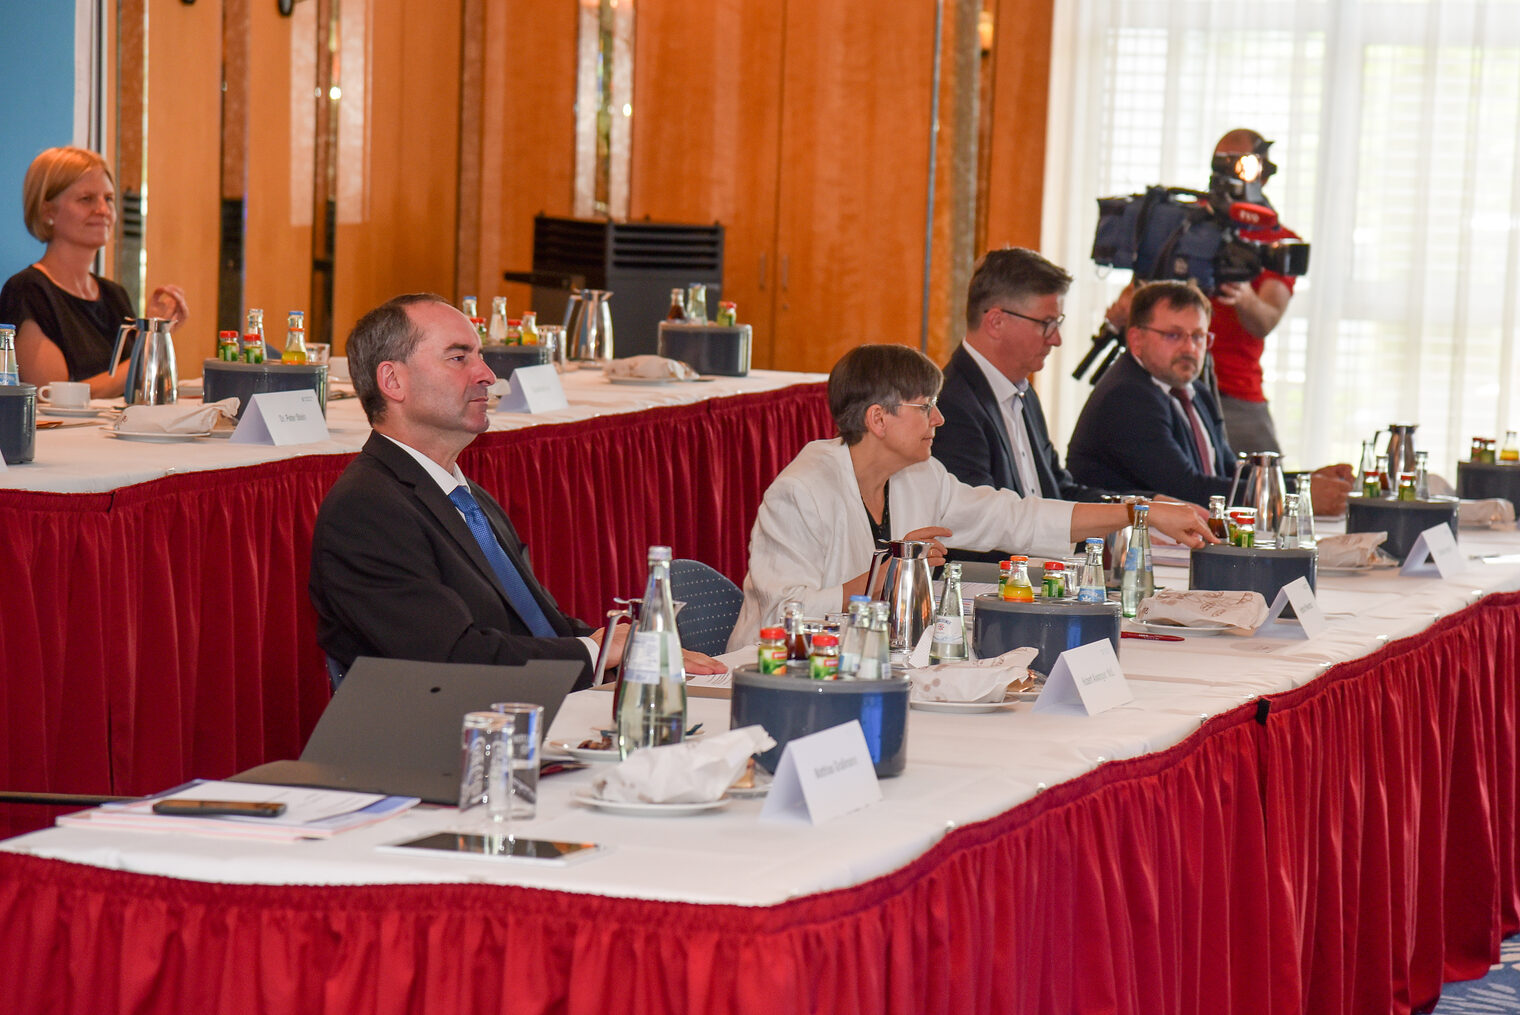 Zufriedene Gäste: Wirtschaftsminister Hubert Aiwanger, MdL, und die Präsidentin der Regierung von Oberfranken, Heidrun Piwernetz, nahmen an der Vollversammlung teil (vorne von links).